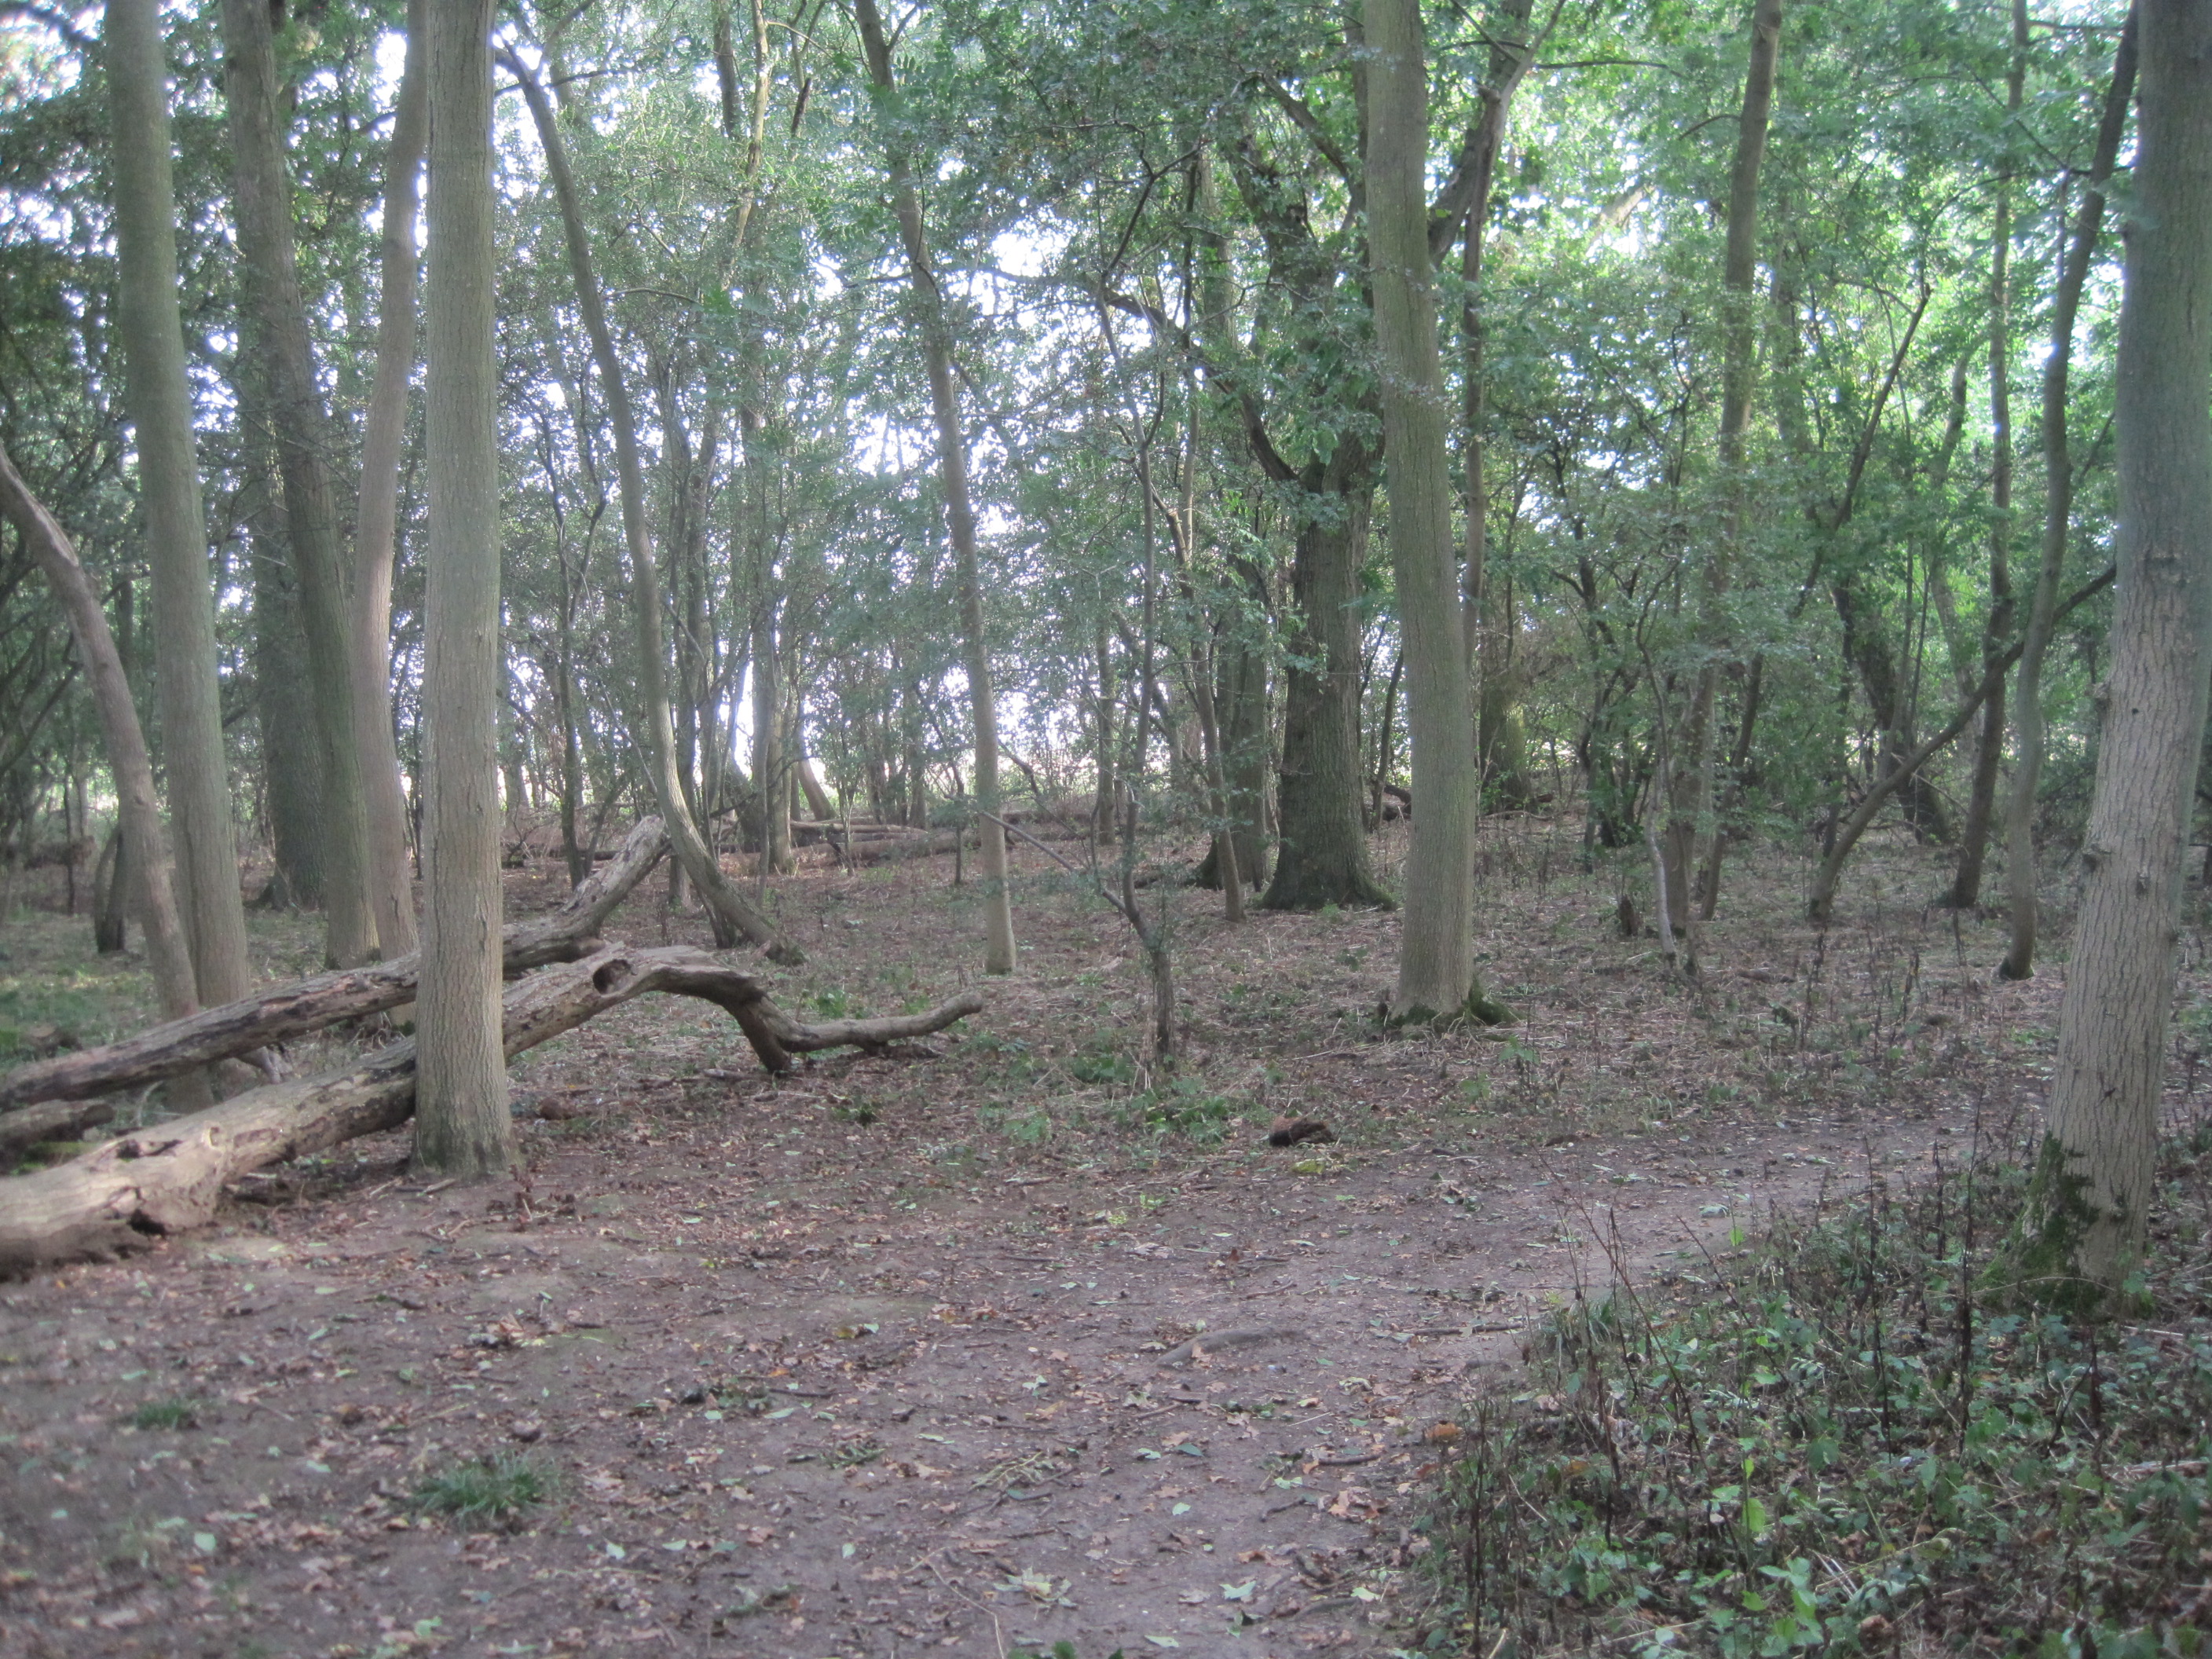 Hardwick Wood